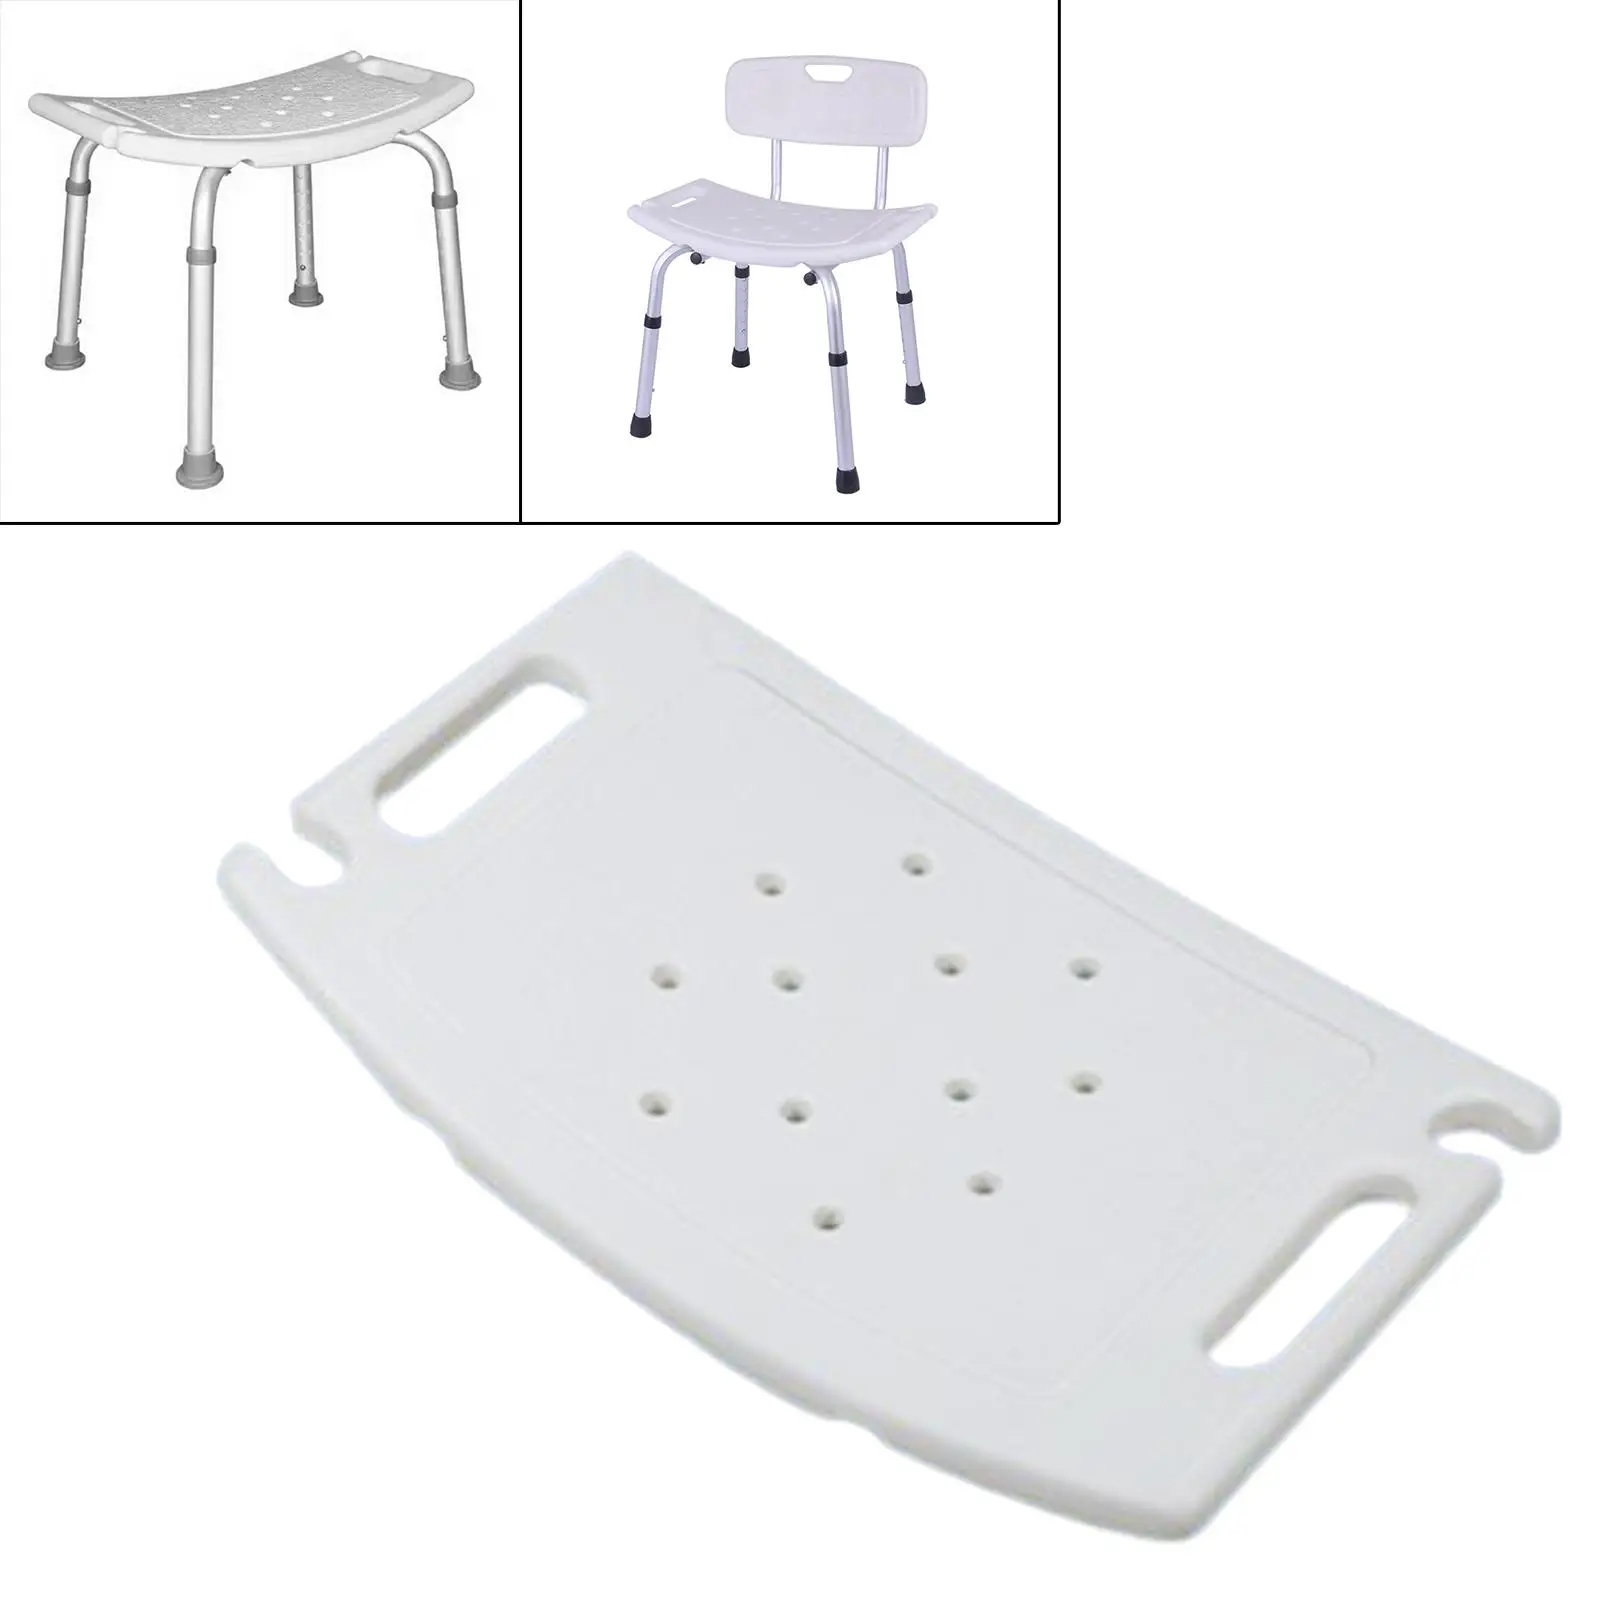 Shower Chair Accessories Non Slip for Shower Stool Bathroom Chair Bath Chair